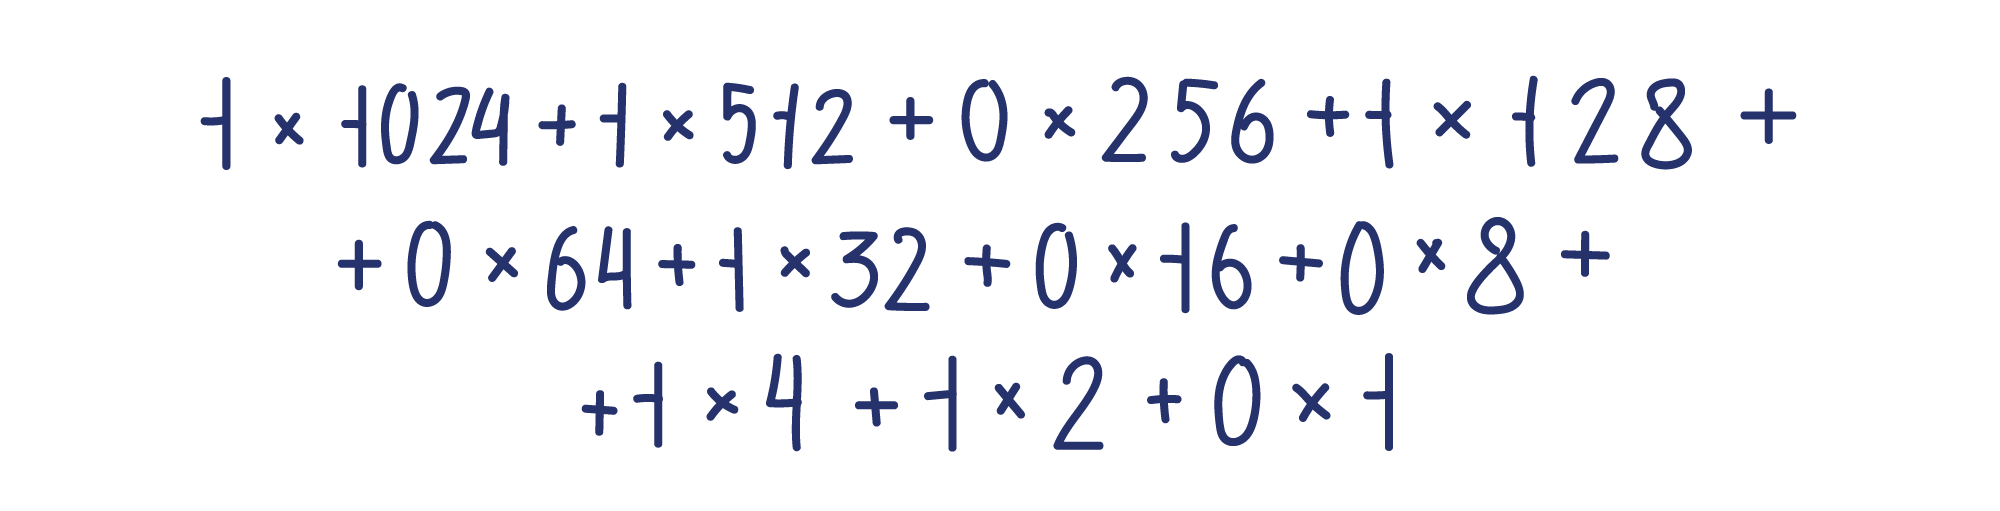 1×1024+1×512+0×256 ++ 1×128+0×64+1×32+0×16 ++ 0×8+1×4+1×2+0×1